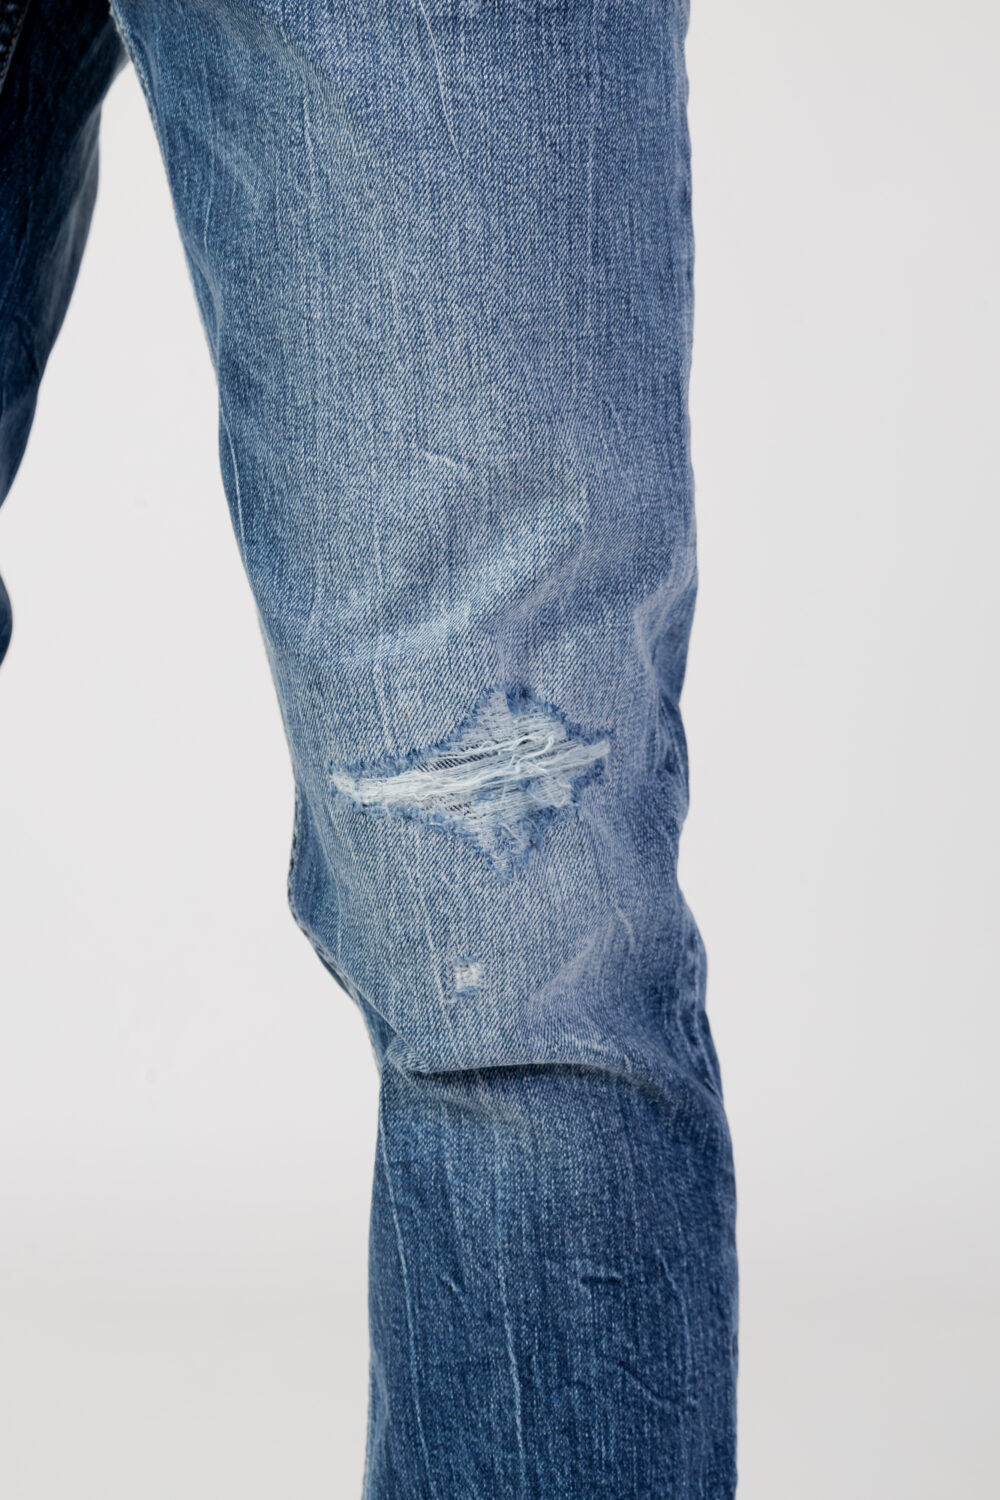 Jeans Tapered Tommy Hilfiger Jeans austin slim tprd dg2 Denim - Foto 10